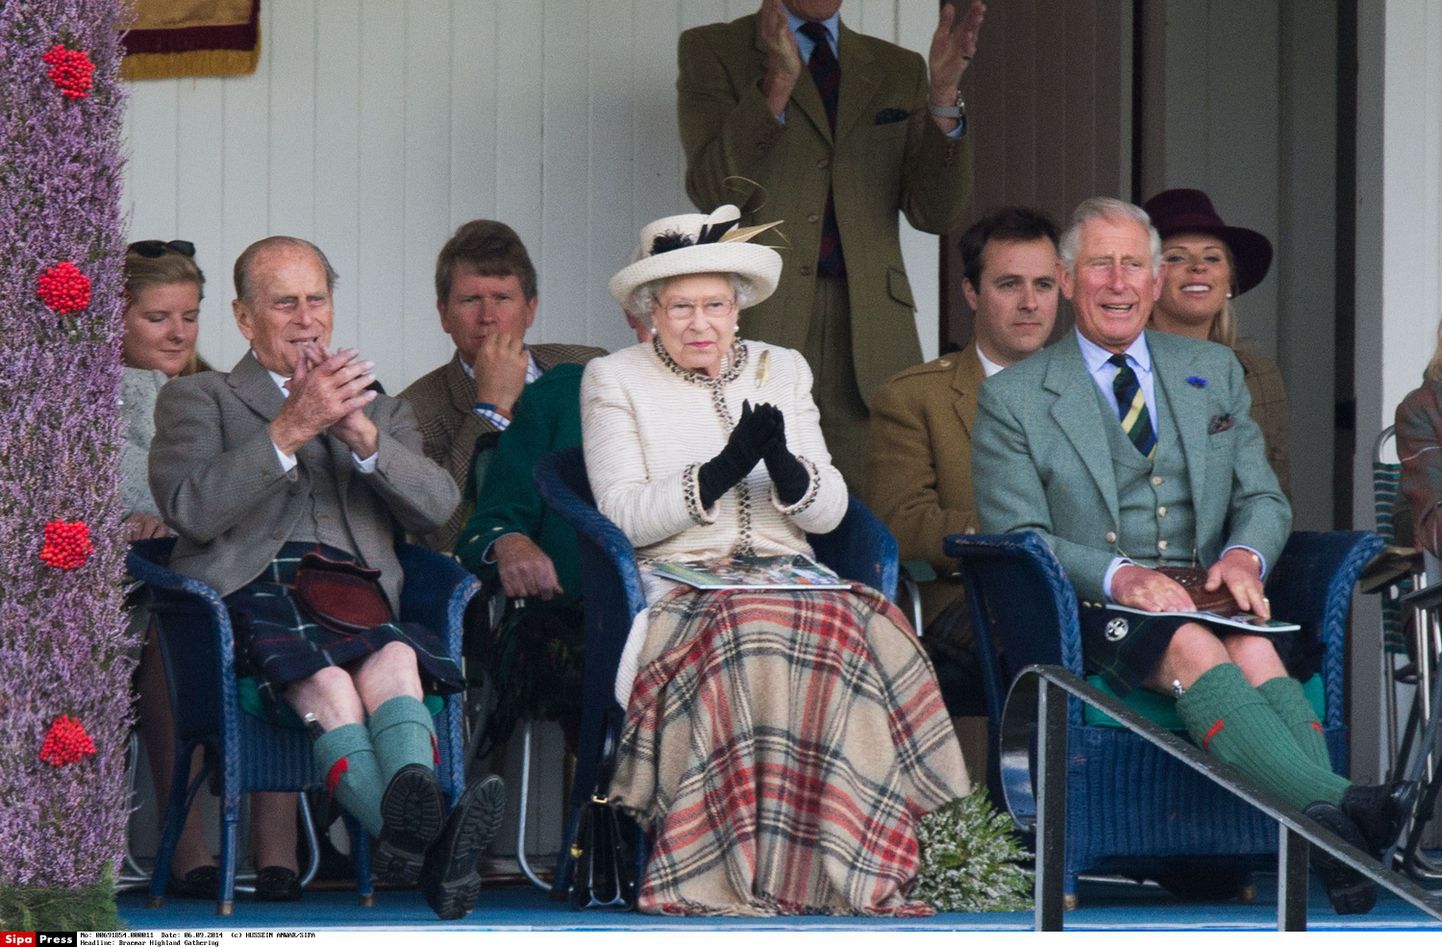 Edinburgh' hertsog prints Philip, kuninganna Elizabeth II ja Walesi prints Charles.